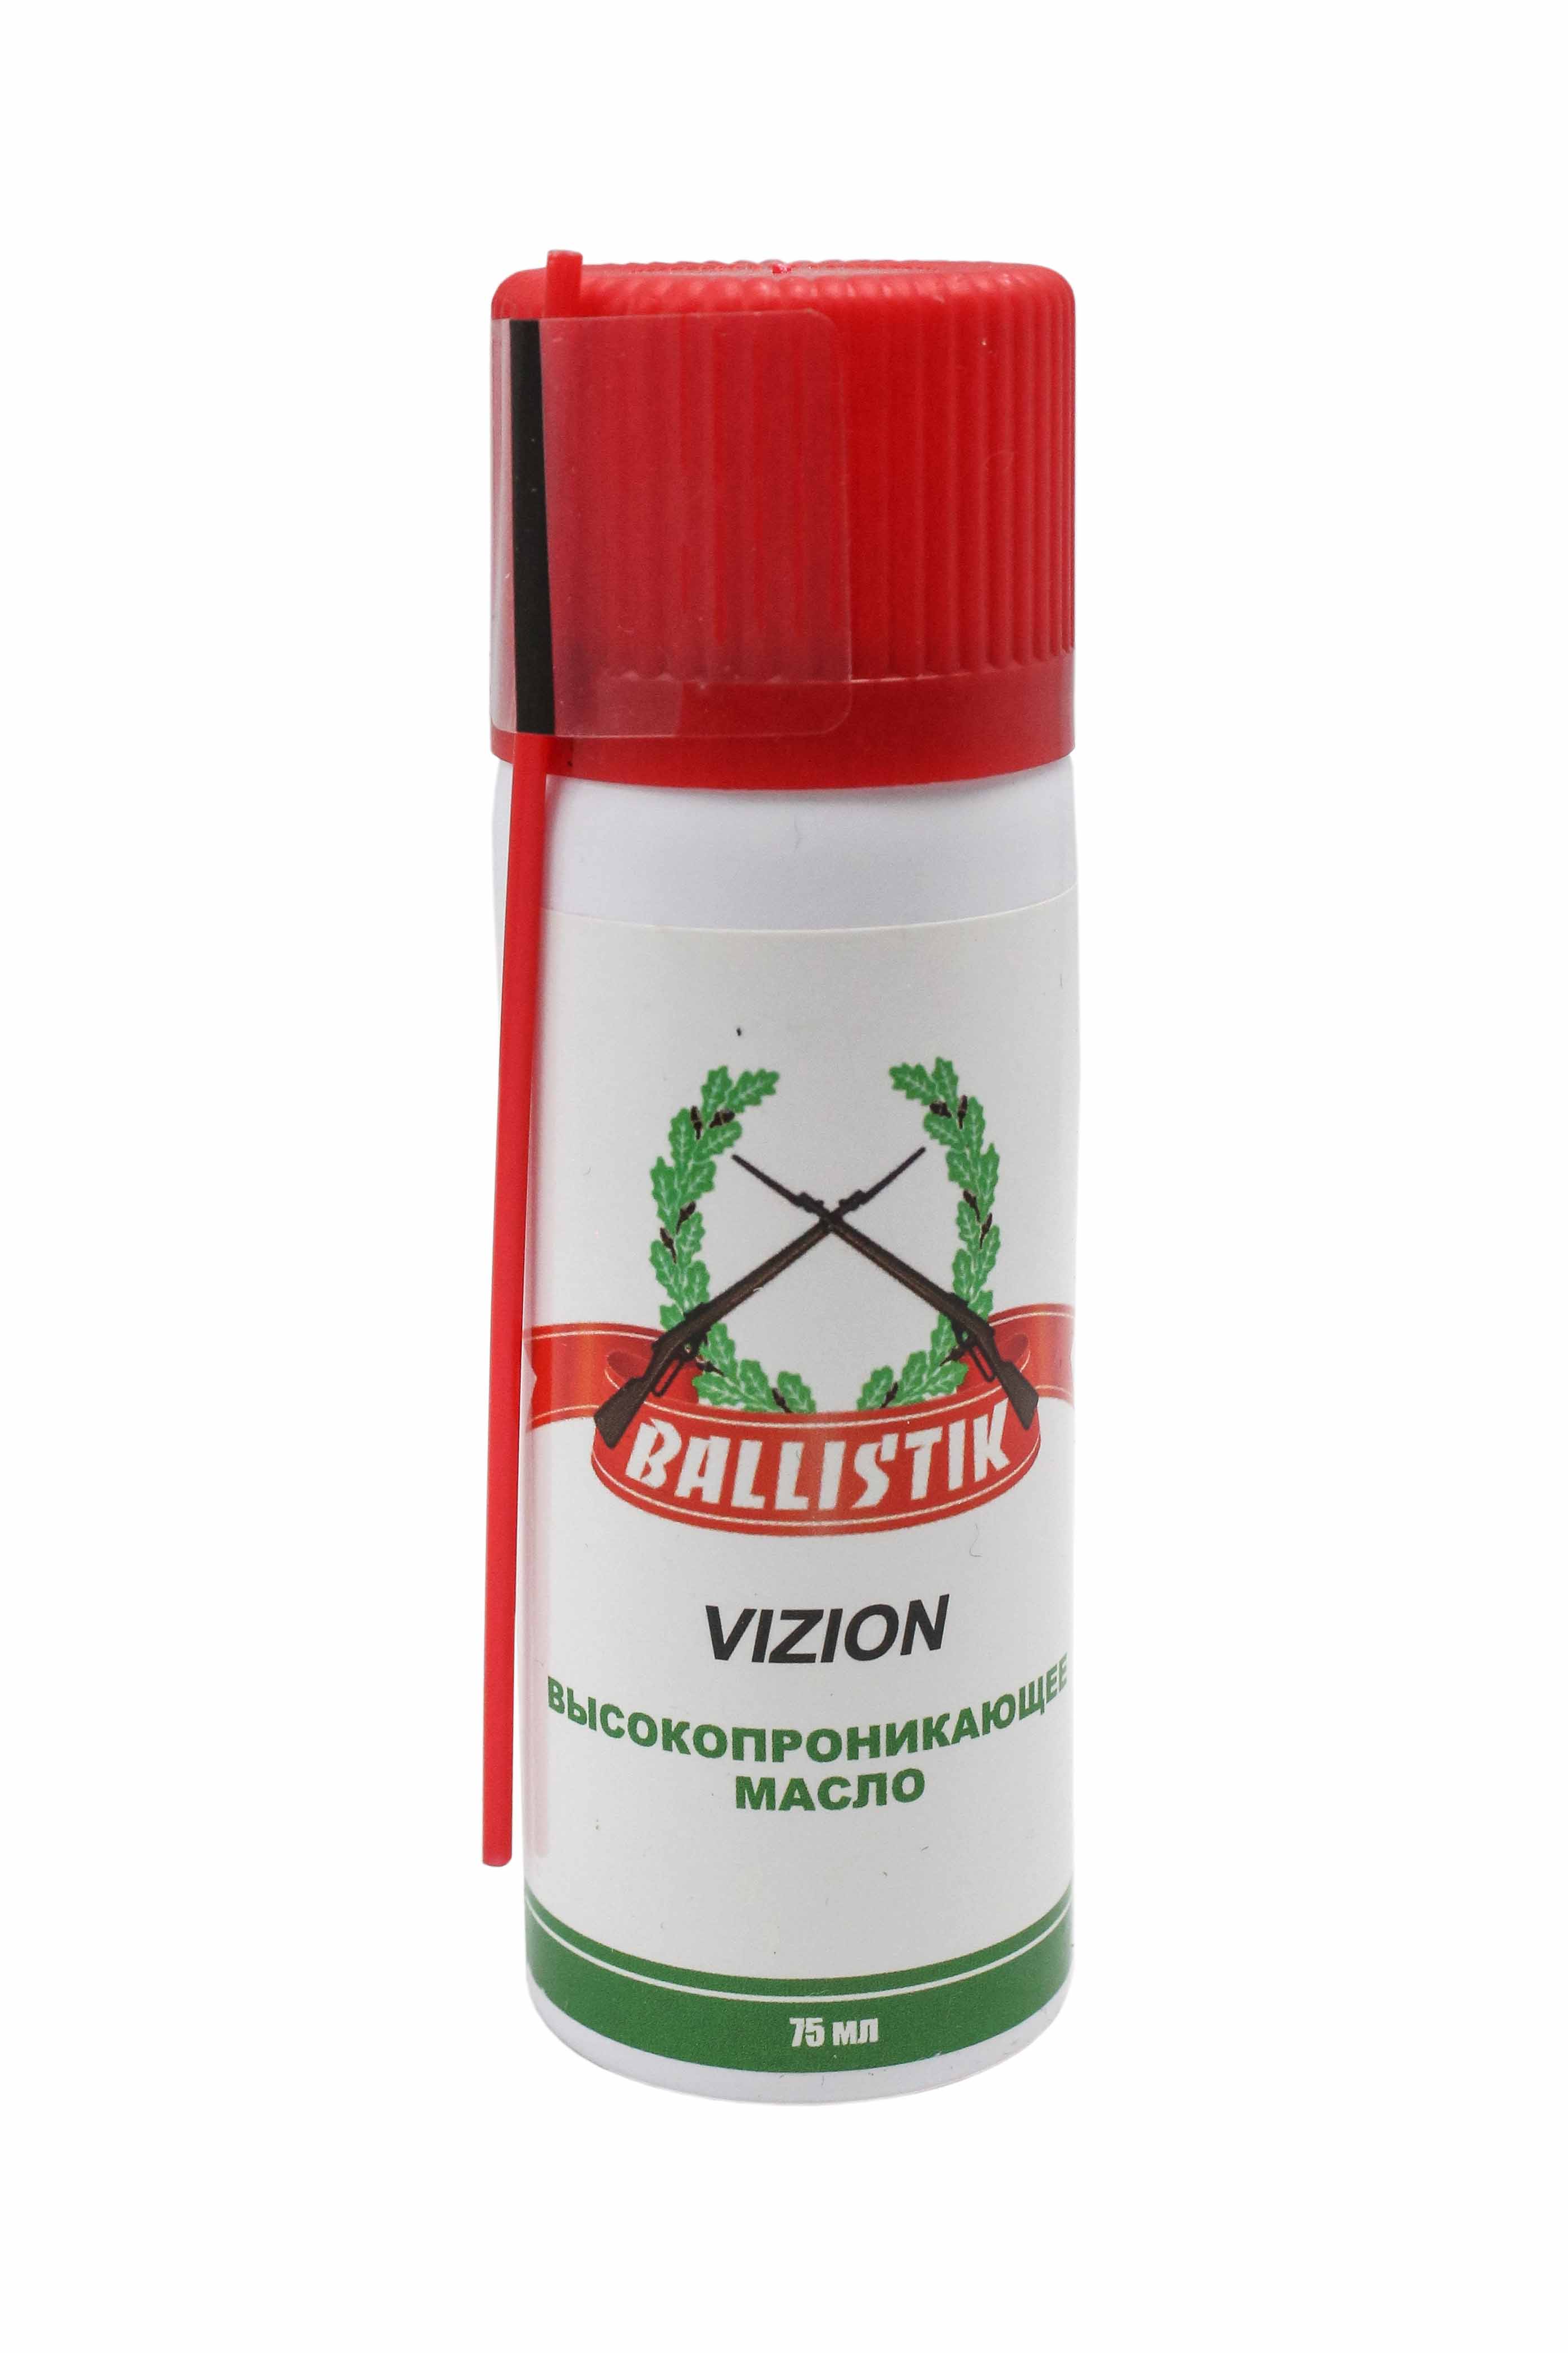 Масло Balistik Vizion высоко-проникающее оружейное spray 75 мл - фото 1